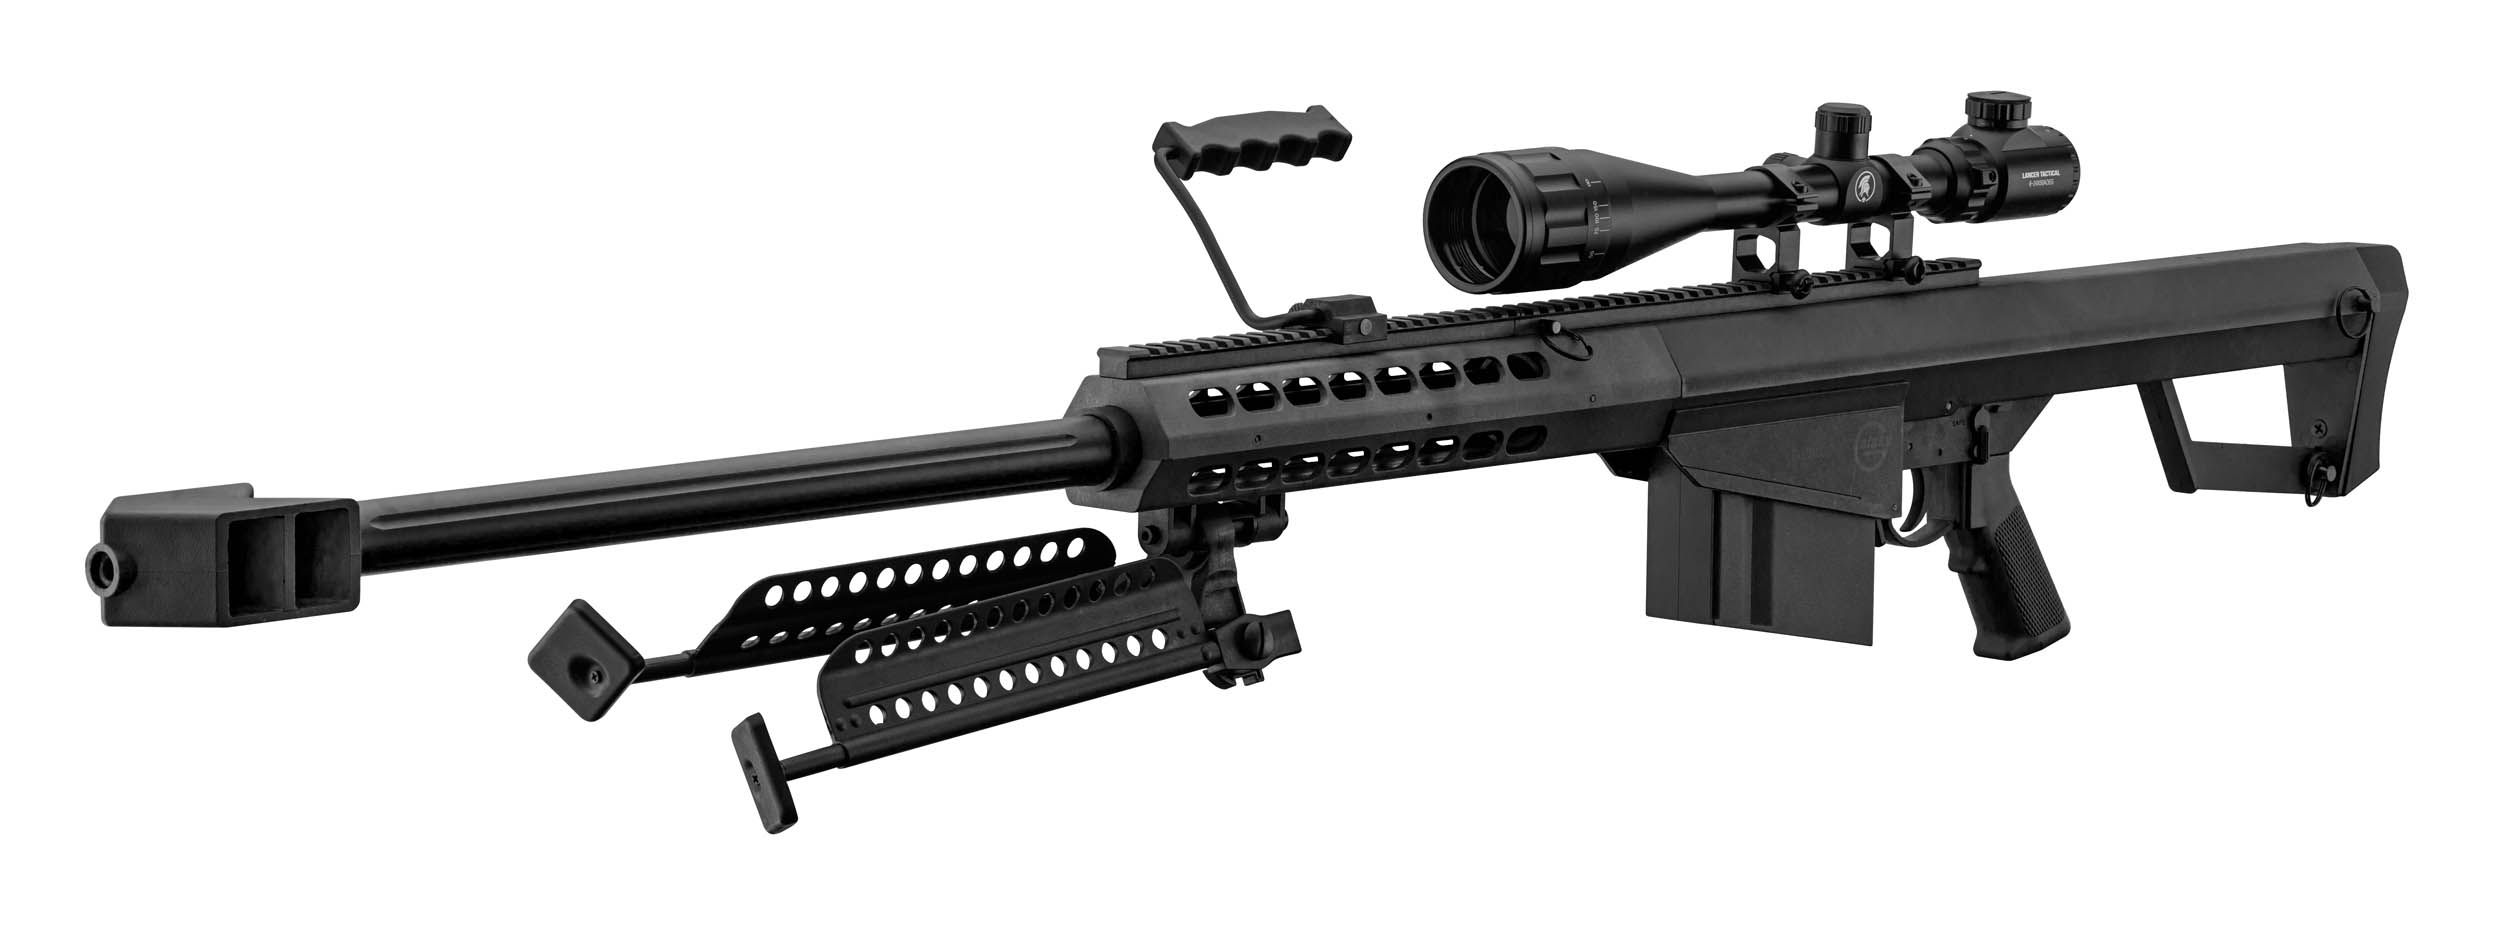 PCKLR3050-08 Pack Sniper LT-20 noir M82 1,5J + lunette + bi-pied + poignée - PCKLR3050